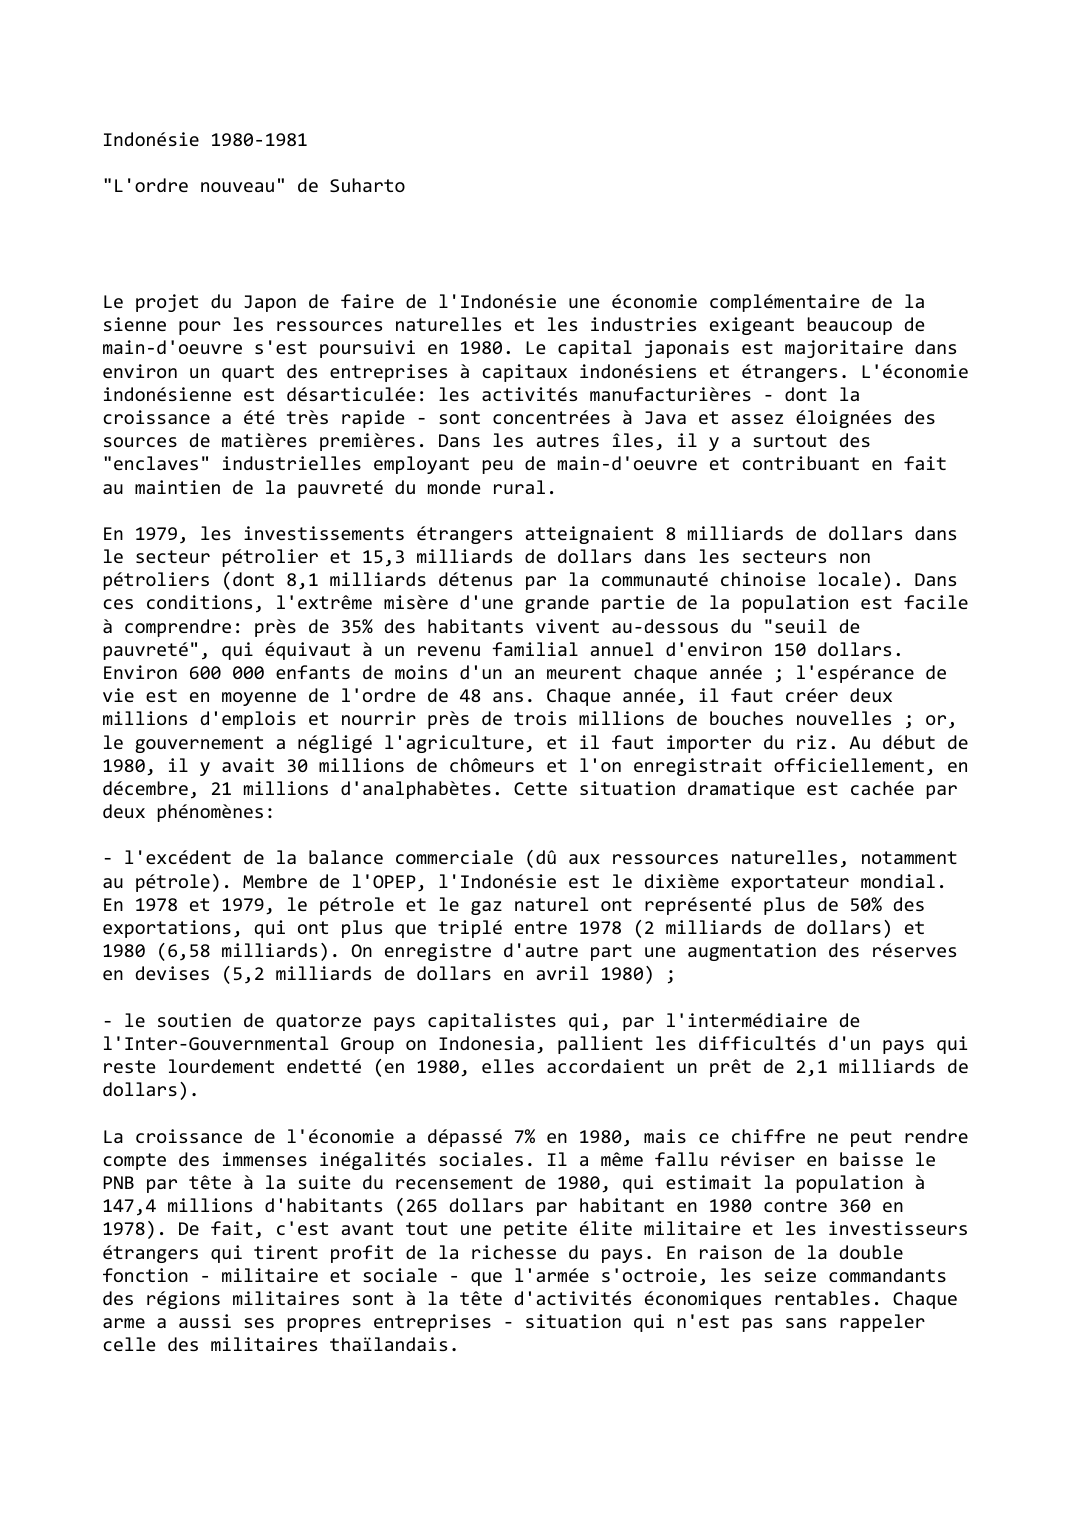 Prévisualisation du document Indonésie 1980-1981

"L'ordre nouveau" de Suharto